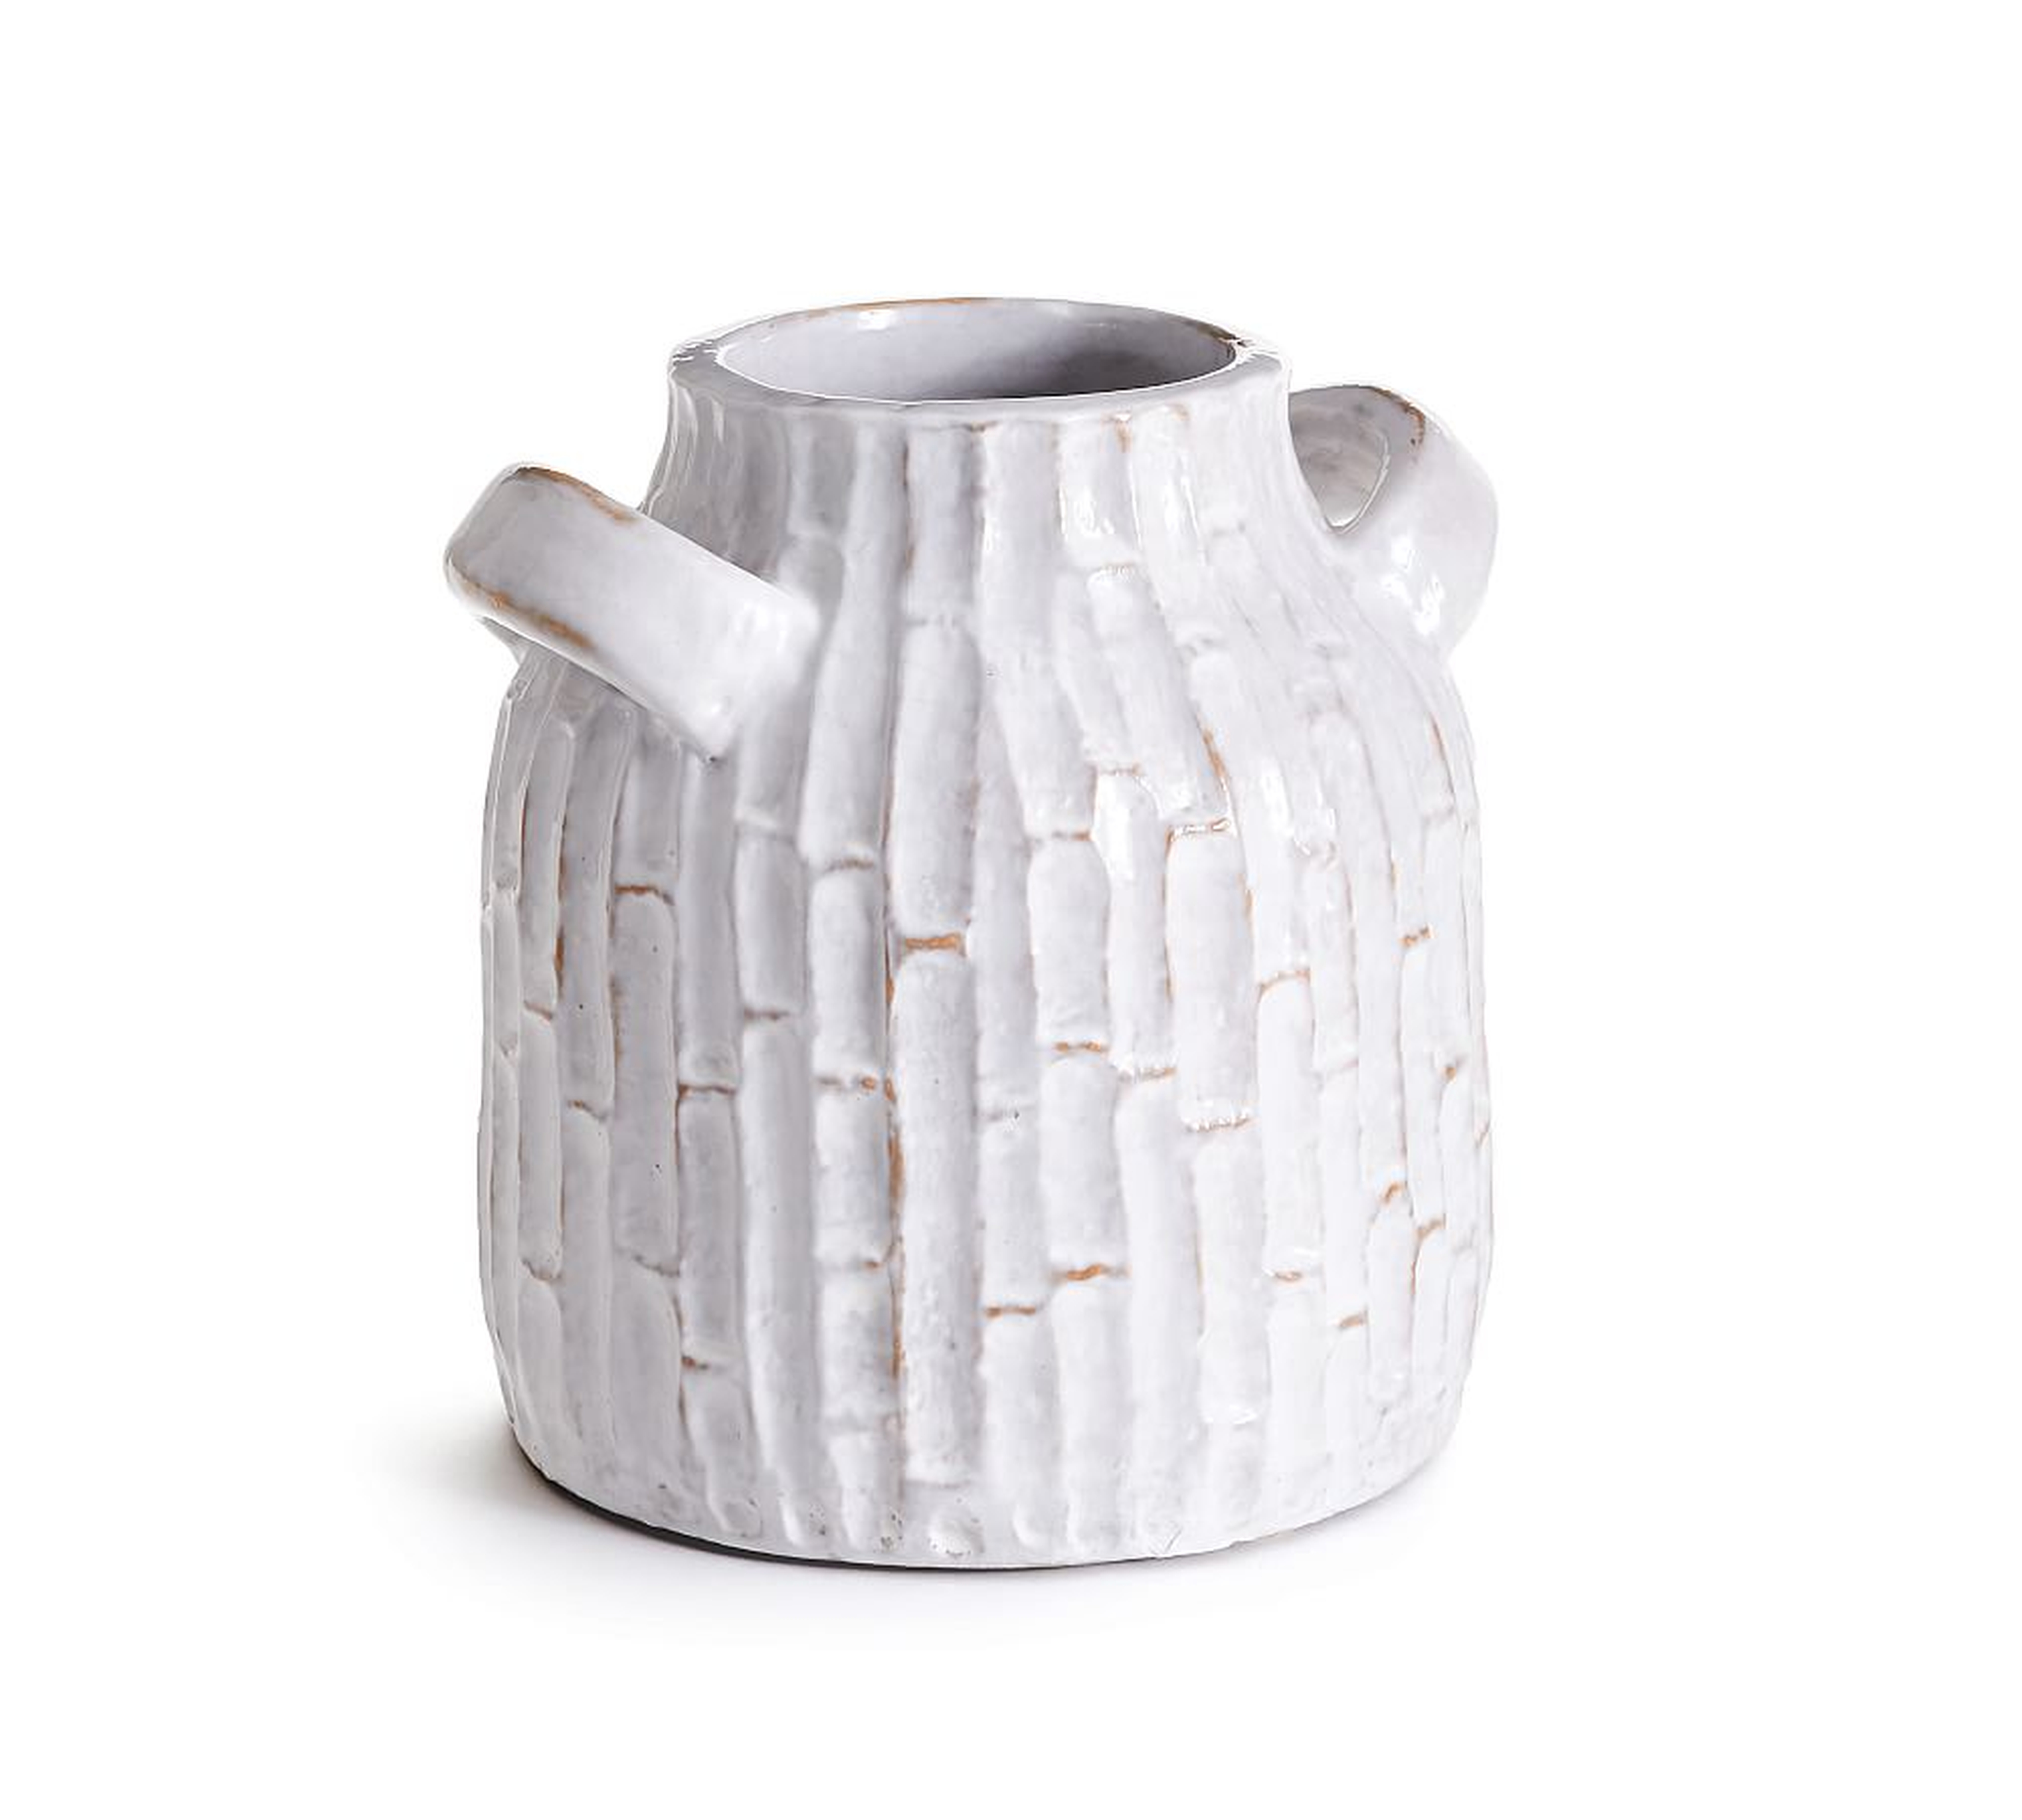 Vivian Terra Cotta Vase, White, 9"H - Pottery Barn